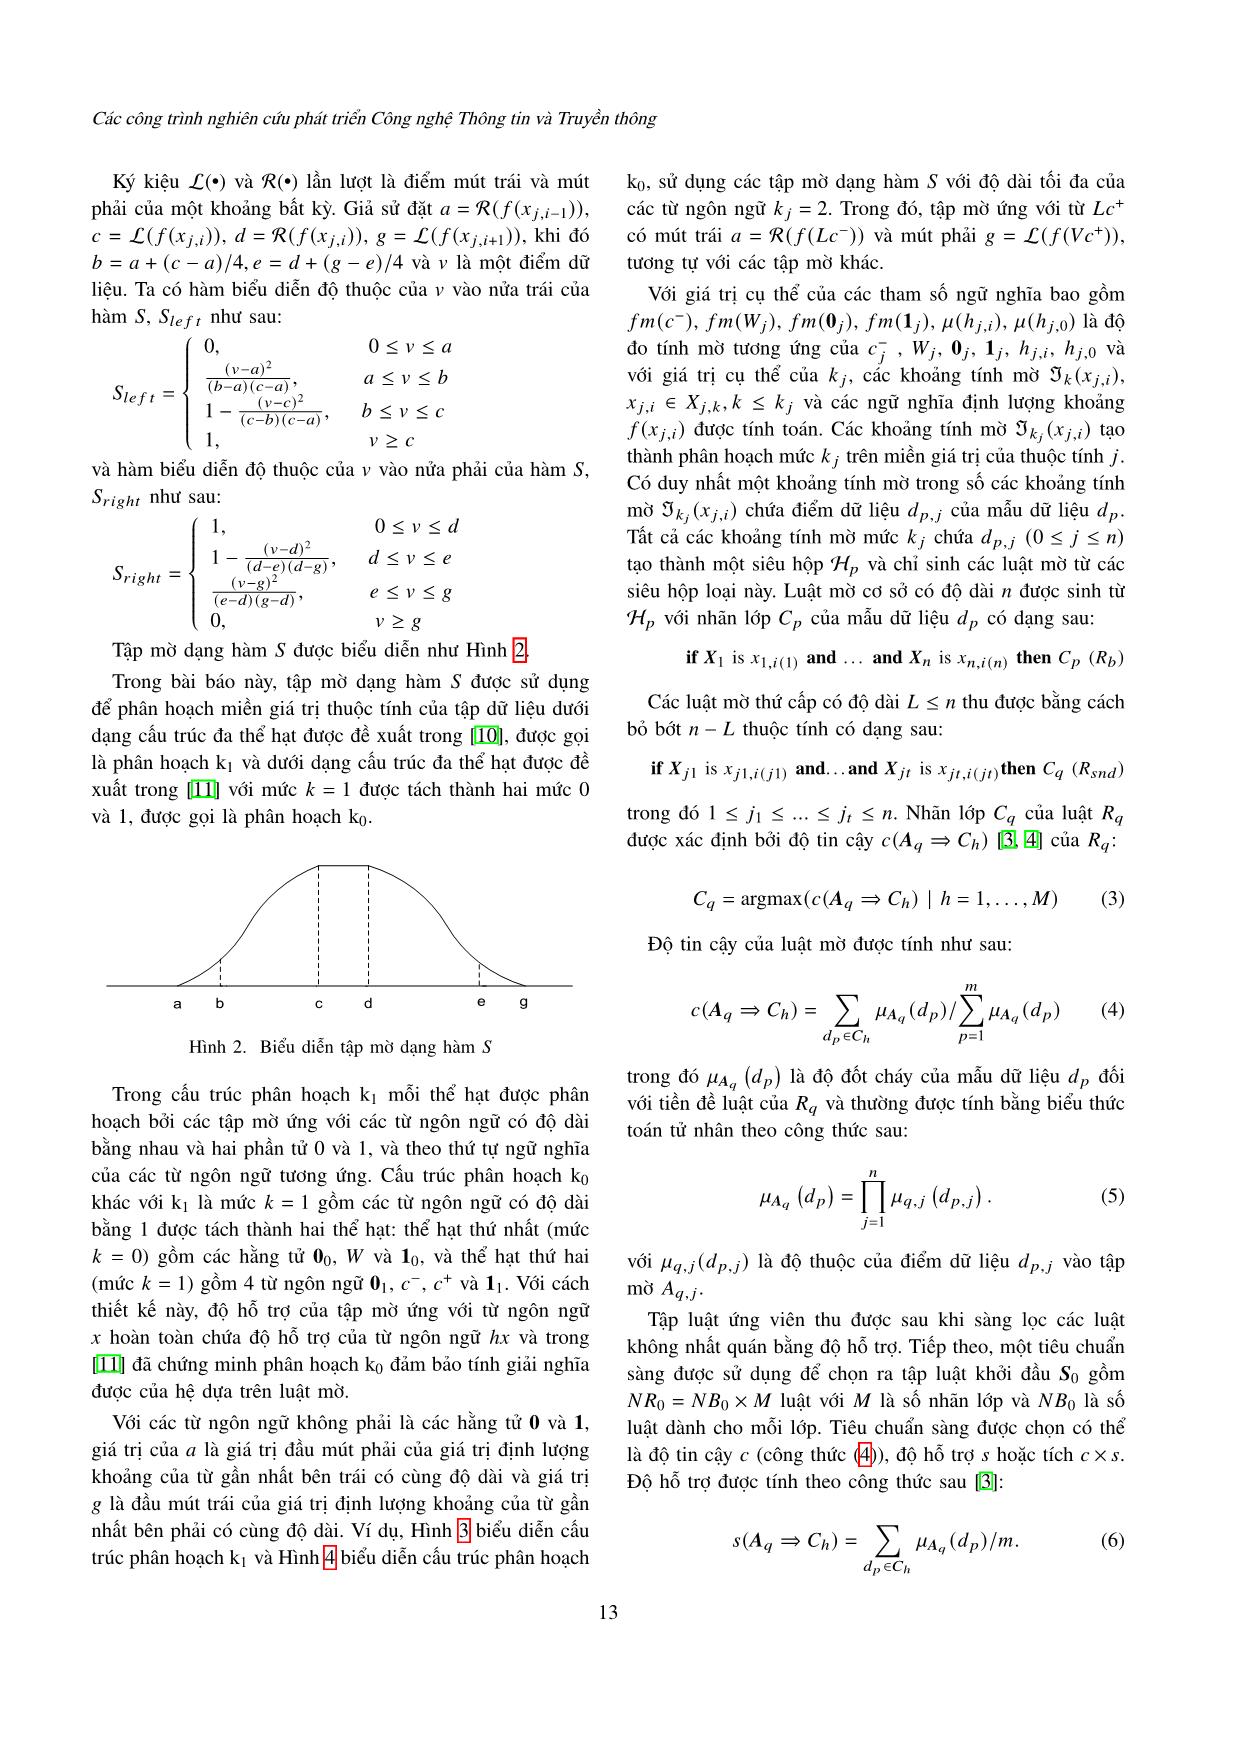 Một phương pháp thiết kế ngữ nghĩa tính toán của các từ ngôn ngữ giải bài toán phân lớp dựa trên luật mờ trang 4